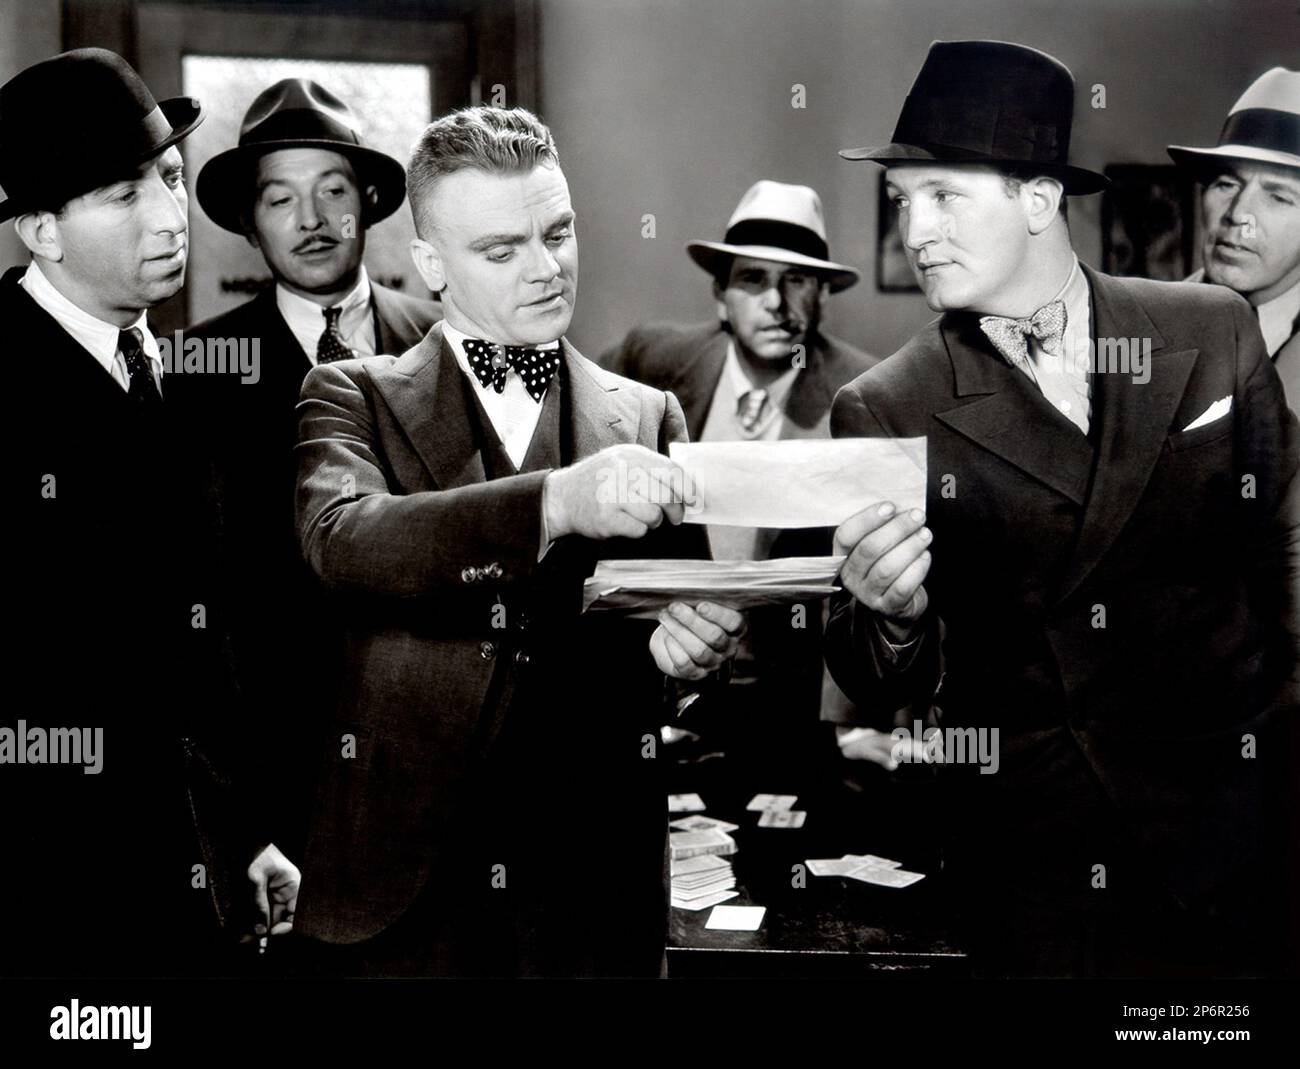 1934 : Der Filmschauspieler JAMES CAGNEY ( 1899 - 1986 ) mit JIMMY THE GENT von Michael Curtiz, aus einem Roman von Laird Doyle, Schülerfilm - KINO - ATTORE CINEMATOGRAFICO - Fliege - Cravatta - papillon - Polka Dots - pois - Hut - cappello - Detective -- - Archivio GBB Stockfoto